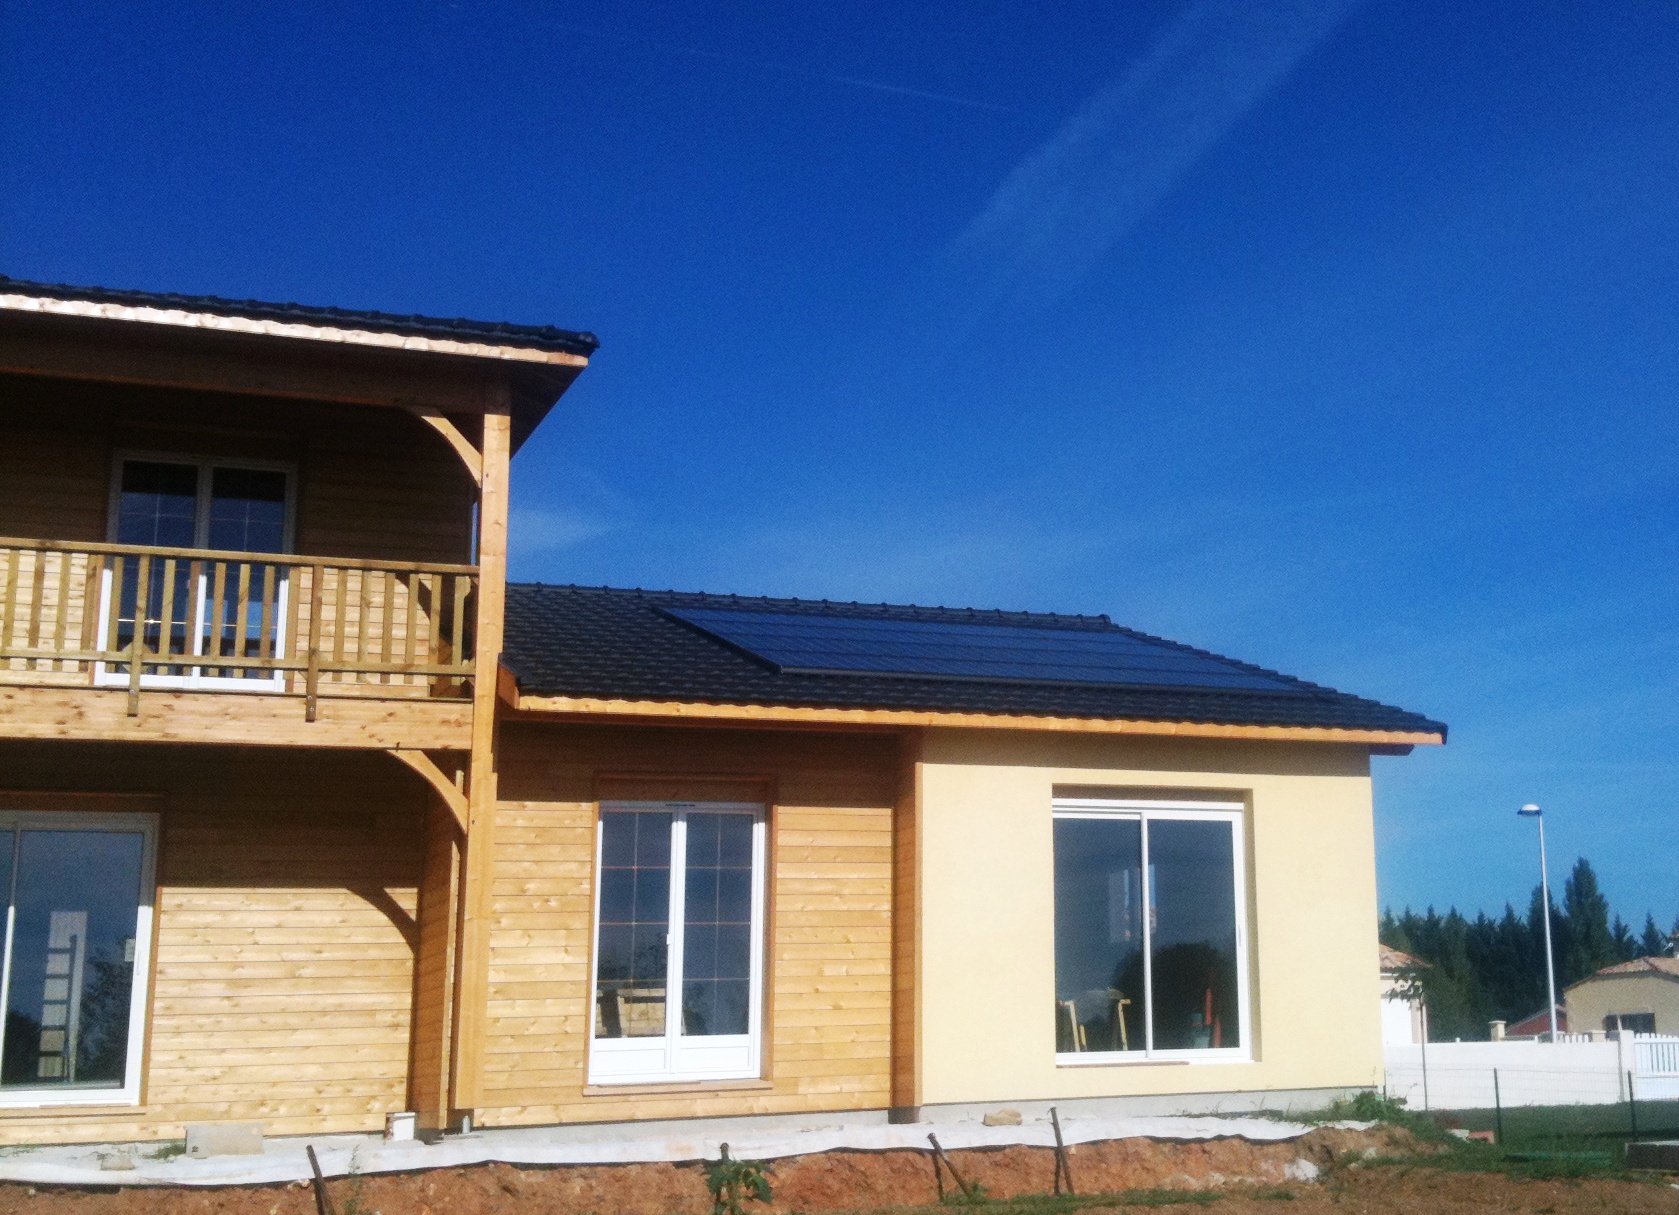 Maison d'habitation neuve. Installation de  modules solaires photovoltaïque d'une puissance de 3 kWc. Boulazac (24). Mise en service en décembre 2010;